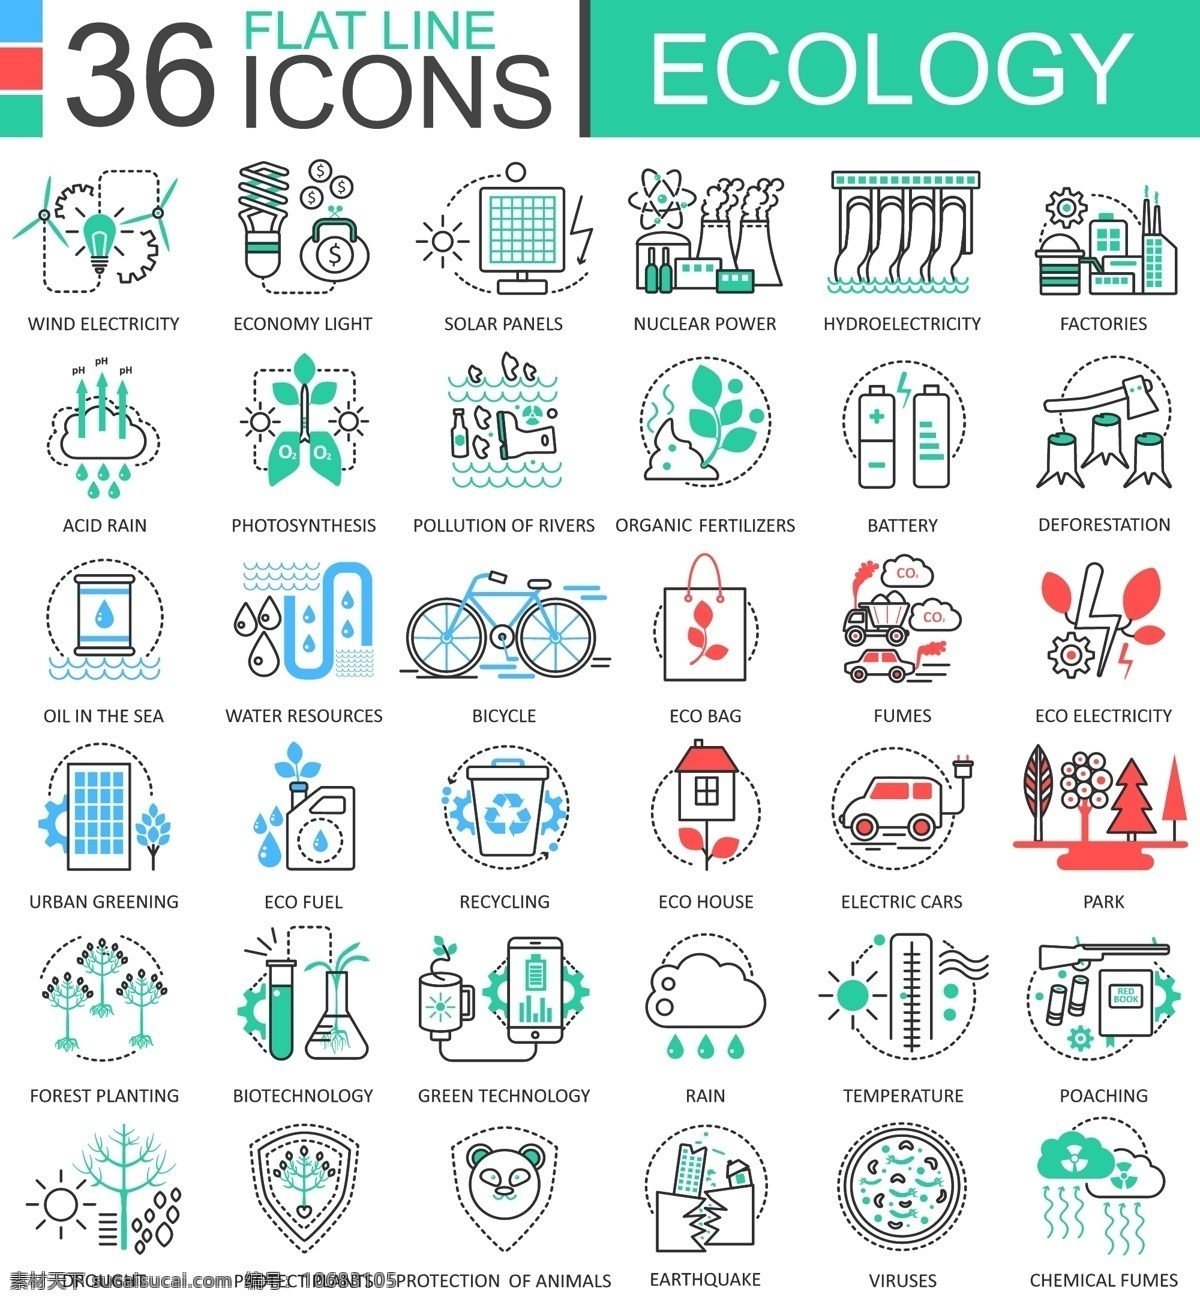 生态环保图标 生态图标 环保图标 低碳绿色 节约能源 循环利用 自行车 环保纸袋 树木 icons 矢量图片 标志图标 其他图标